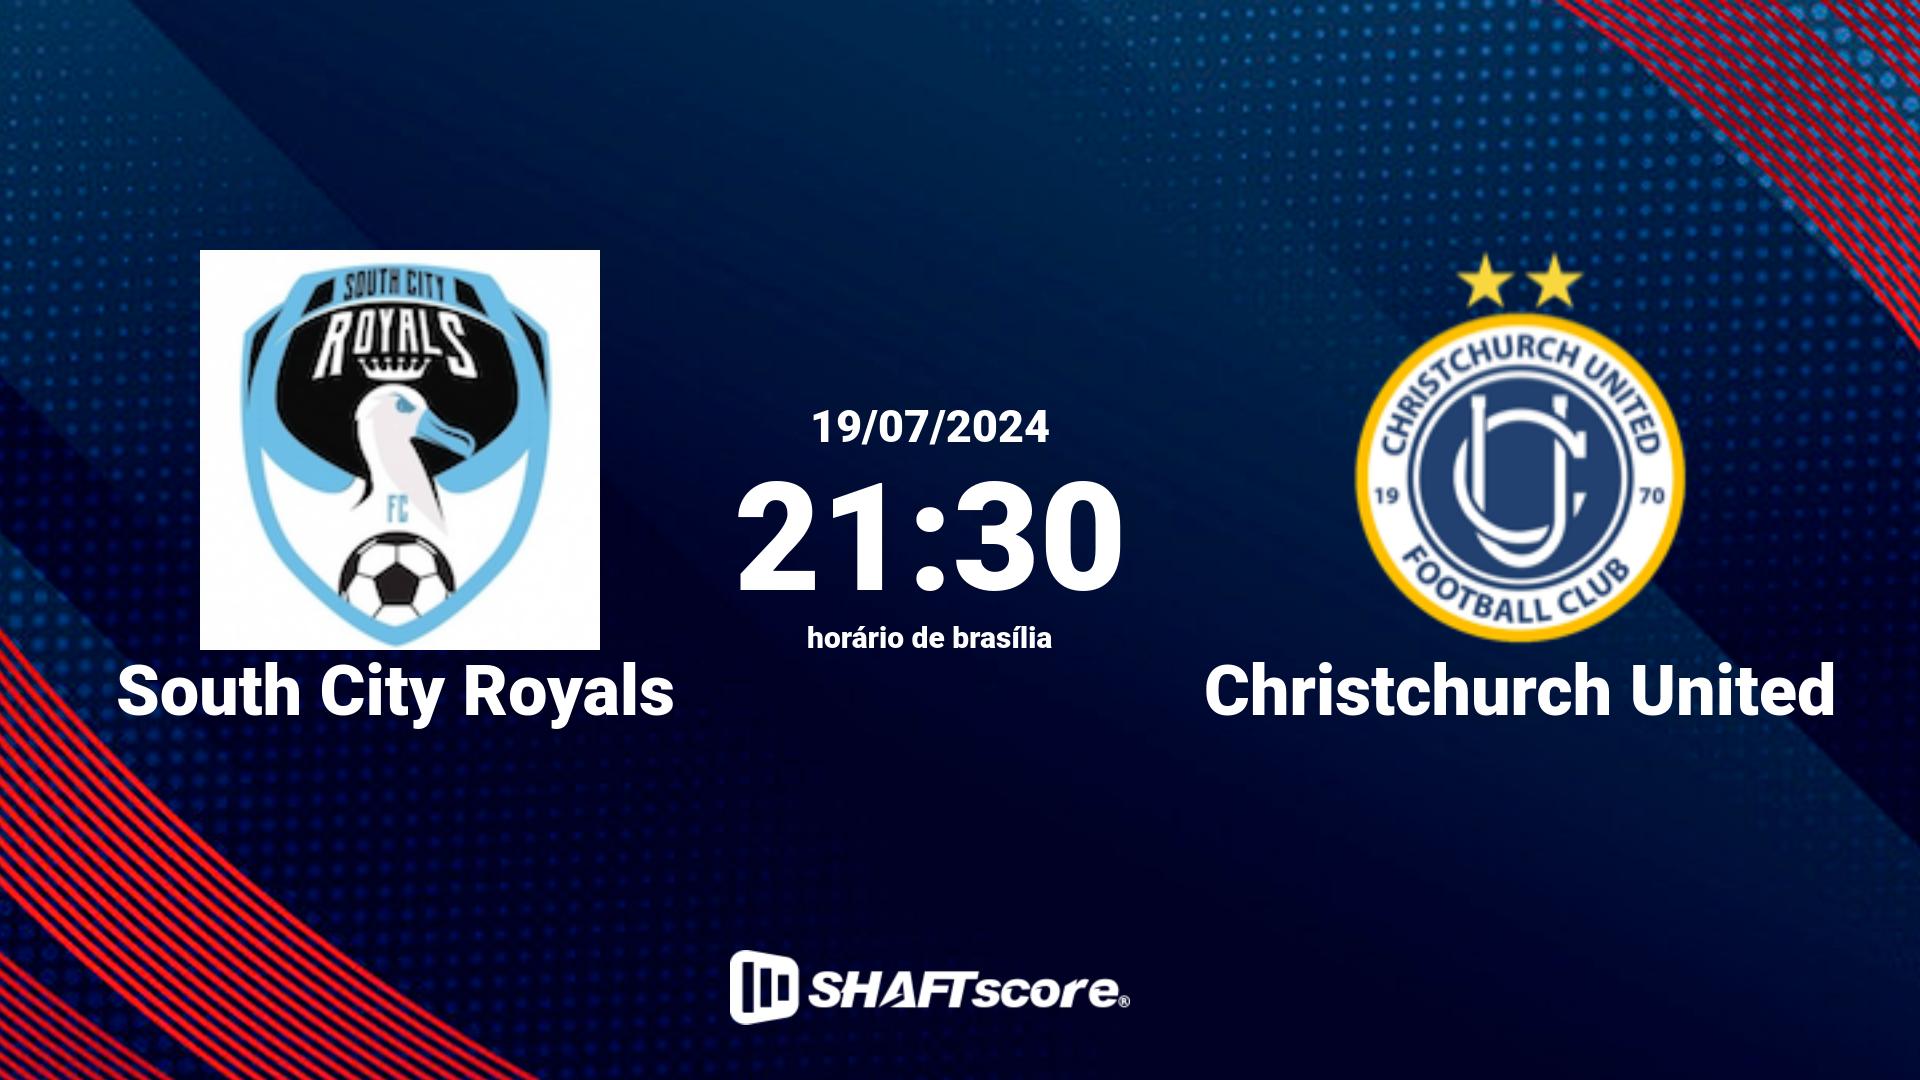 Estatísticas do jogo South City Royals vs Christchurch United 19.07 21:30